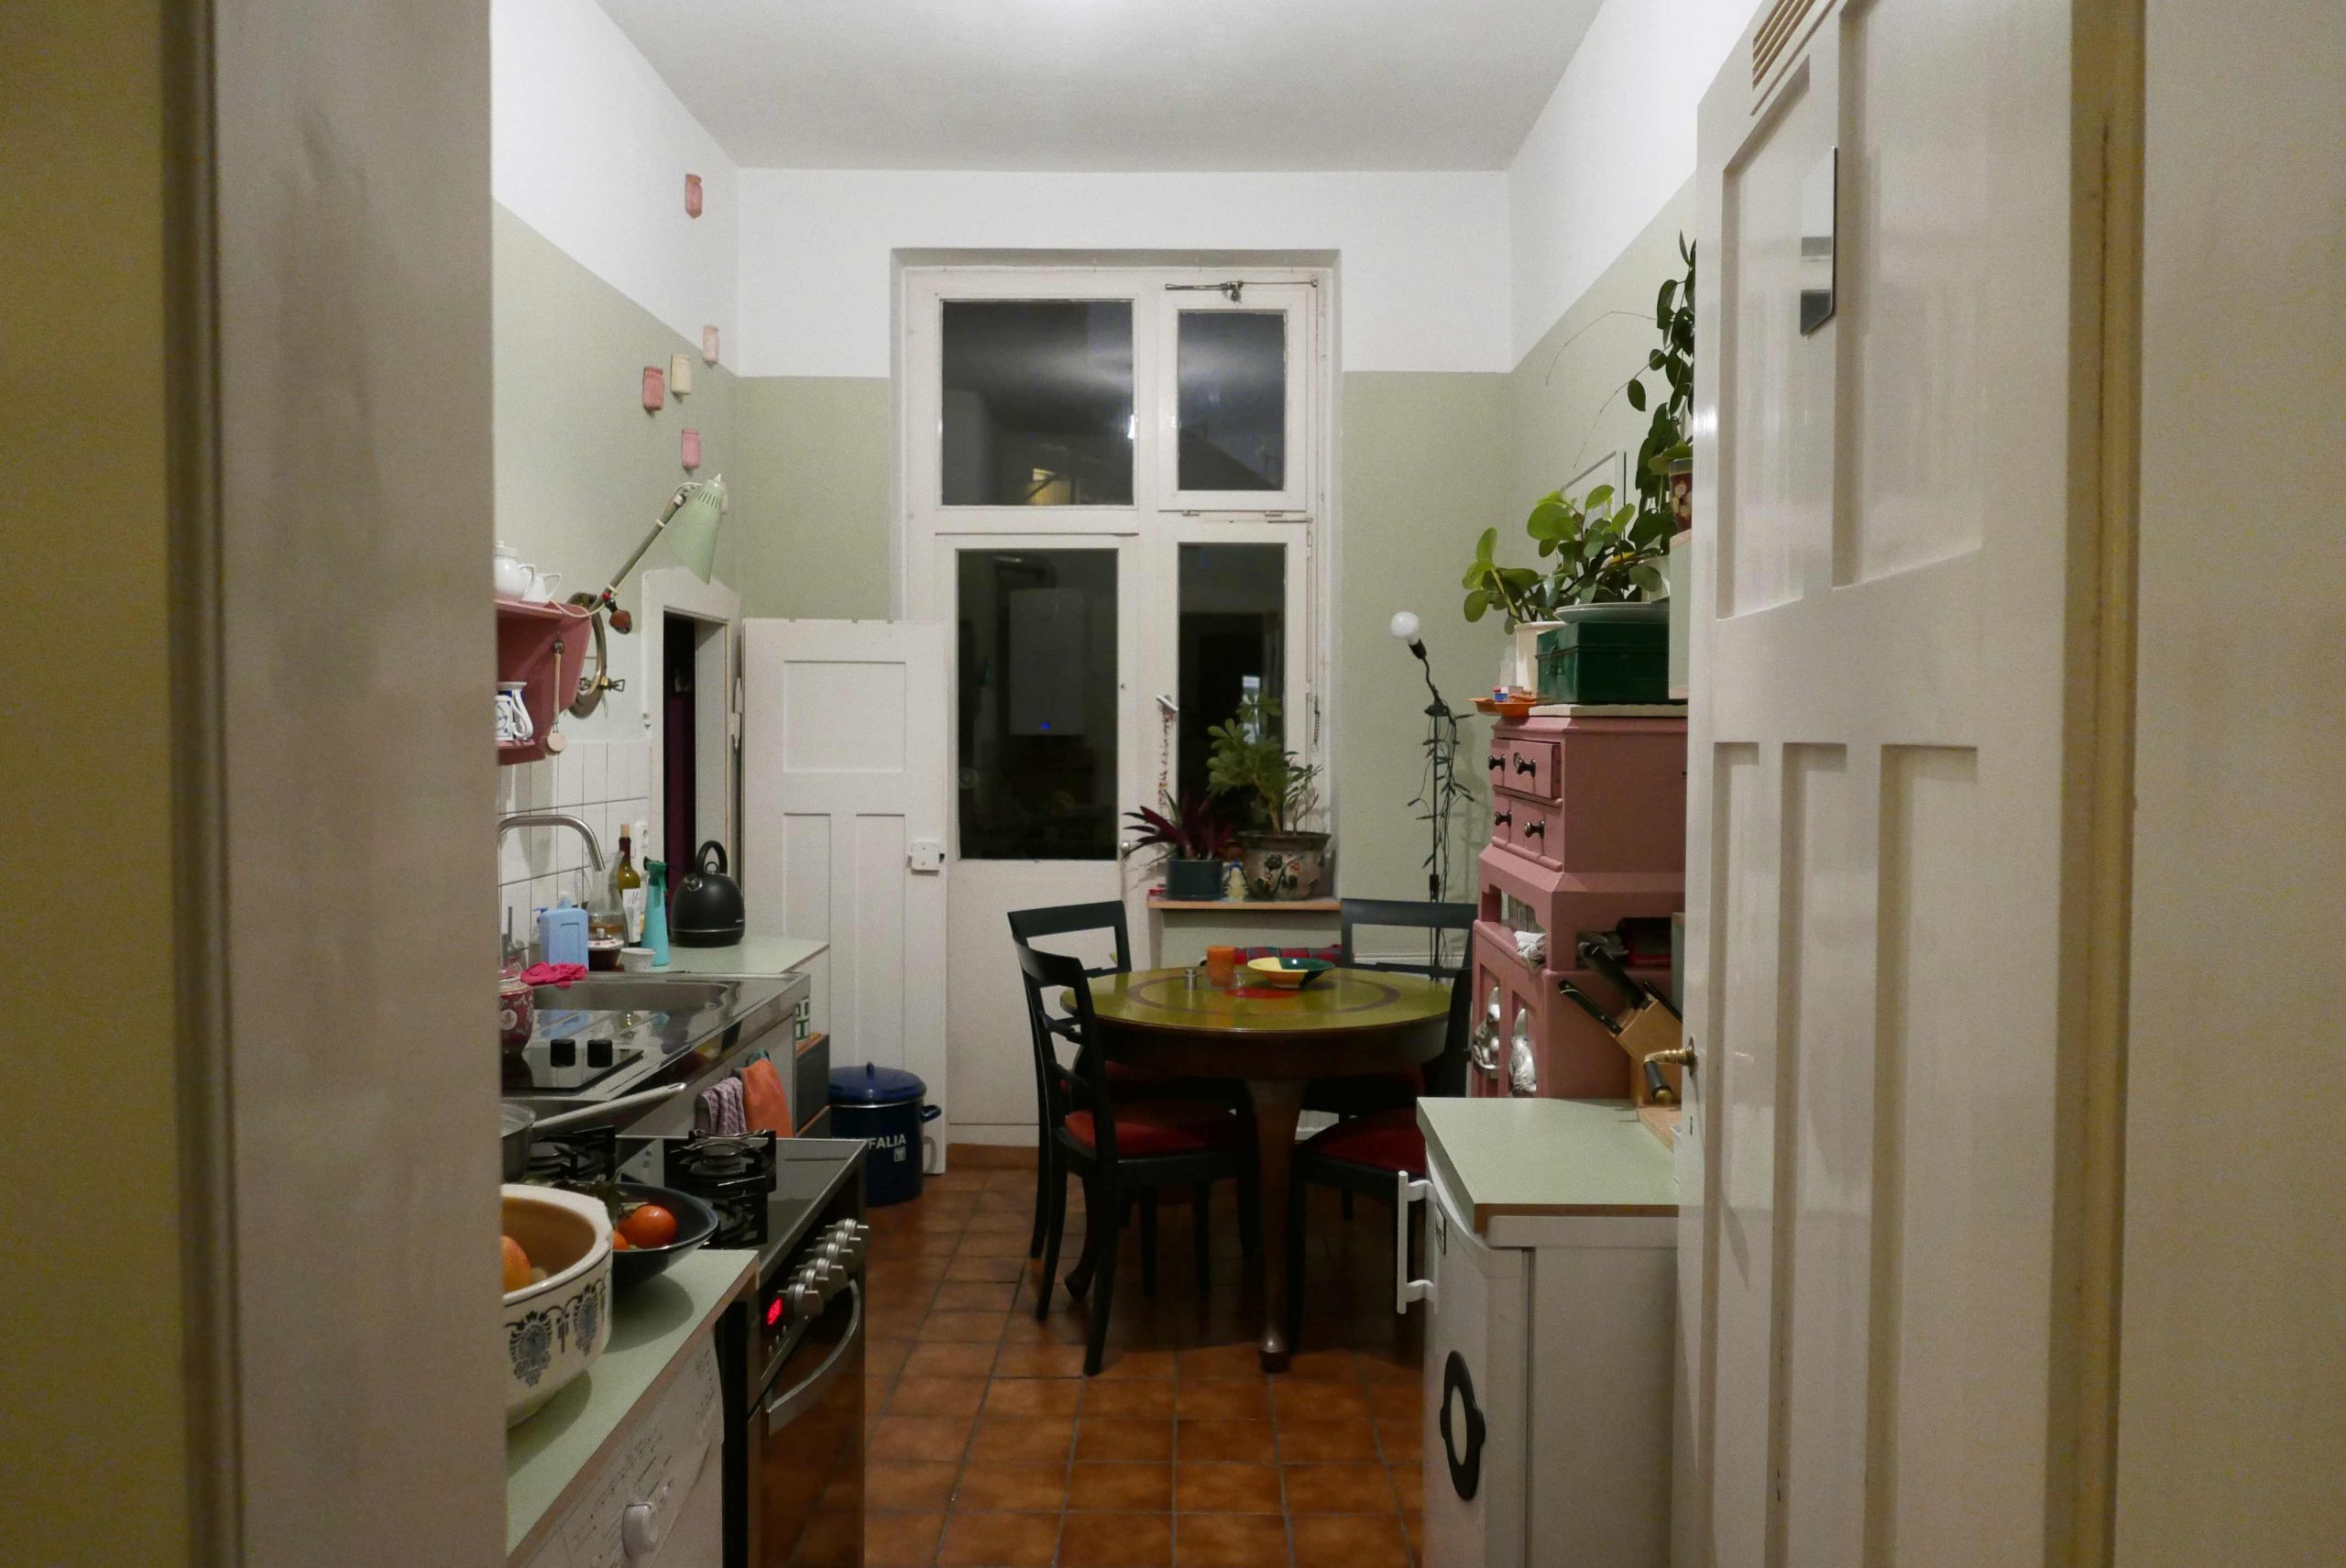 Ansicht einer Küche in voller Beleuchtung der Deckenlampe